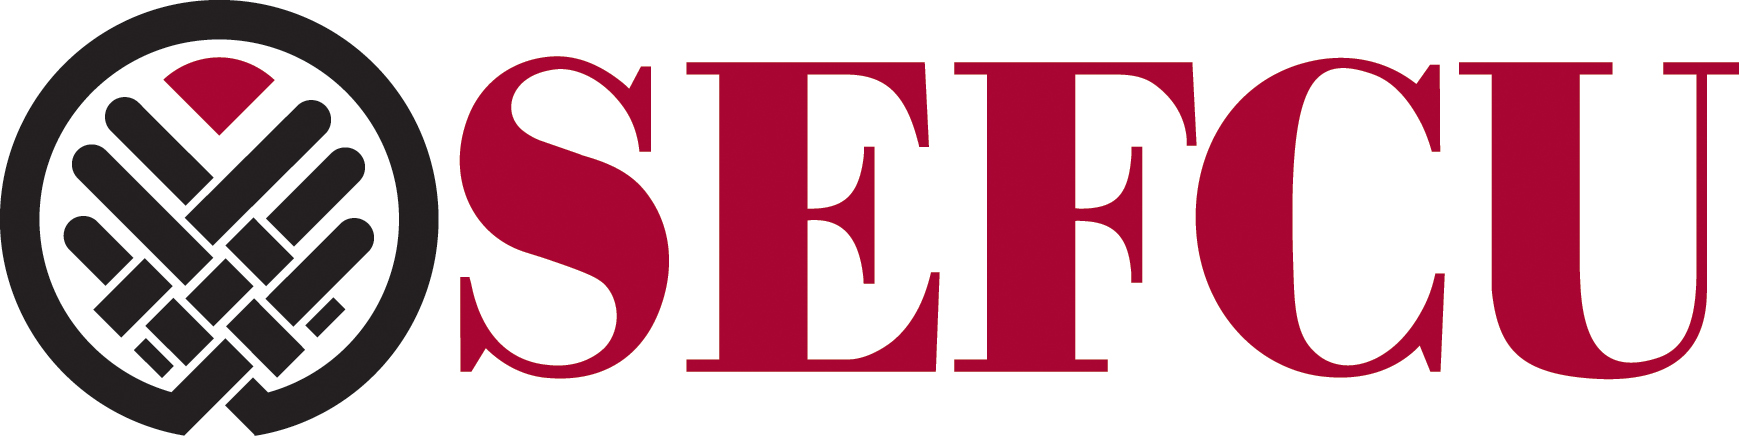 SEFCU Logo 2017